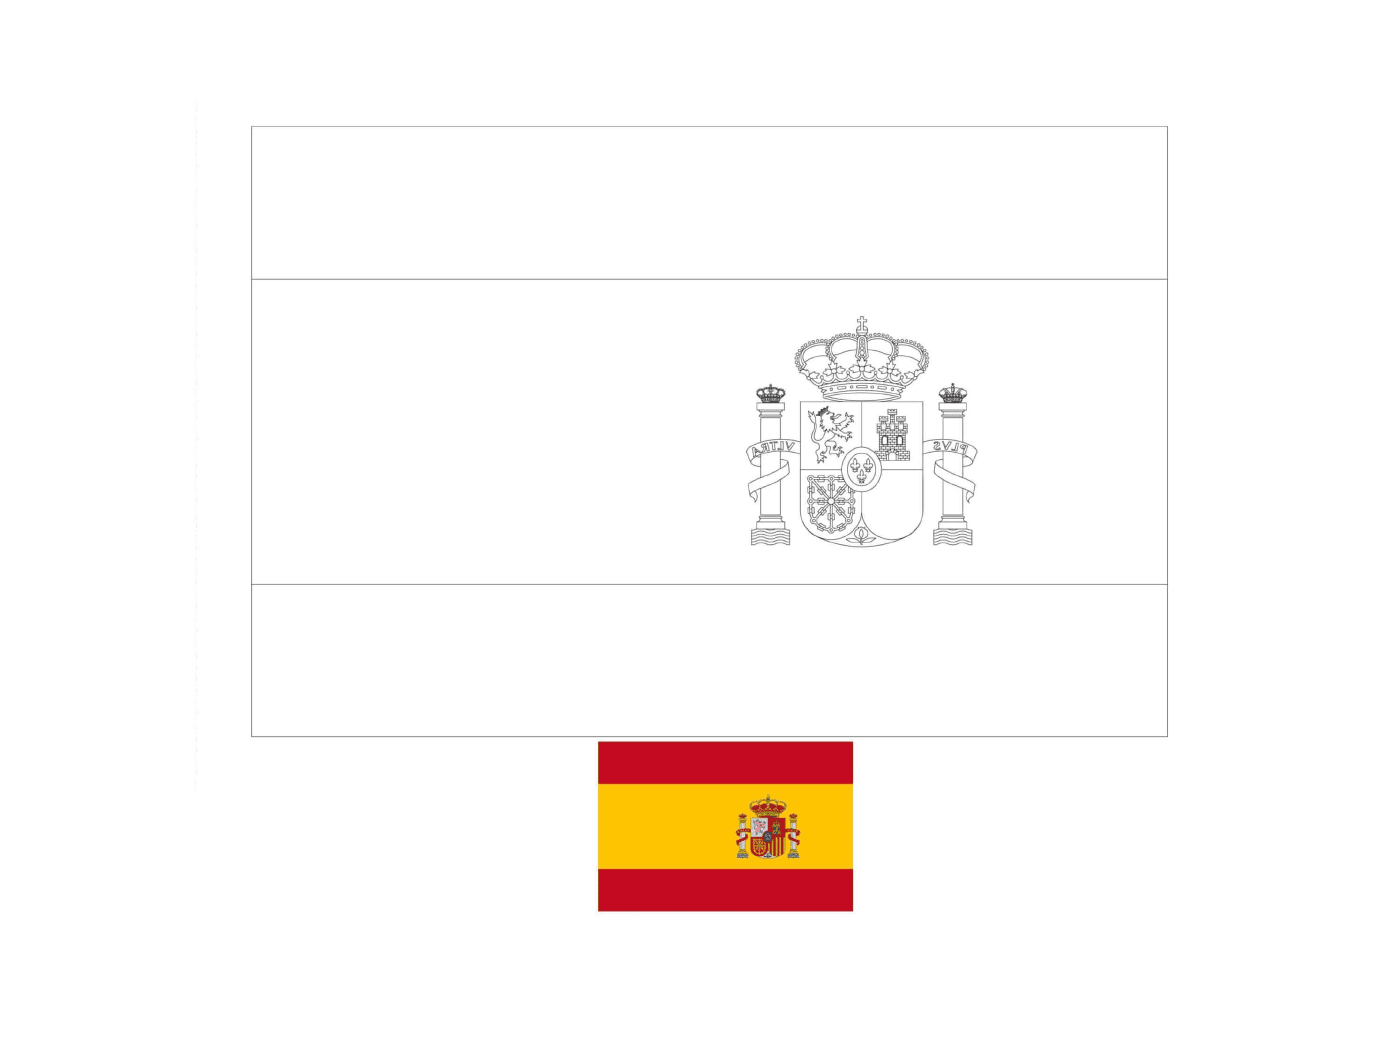  Bandeira da Espanha desenhada com exemplos 